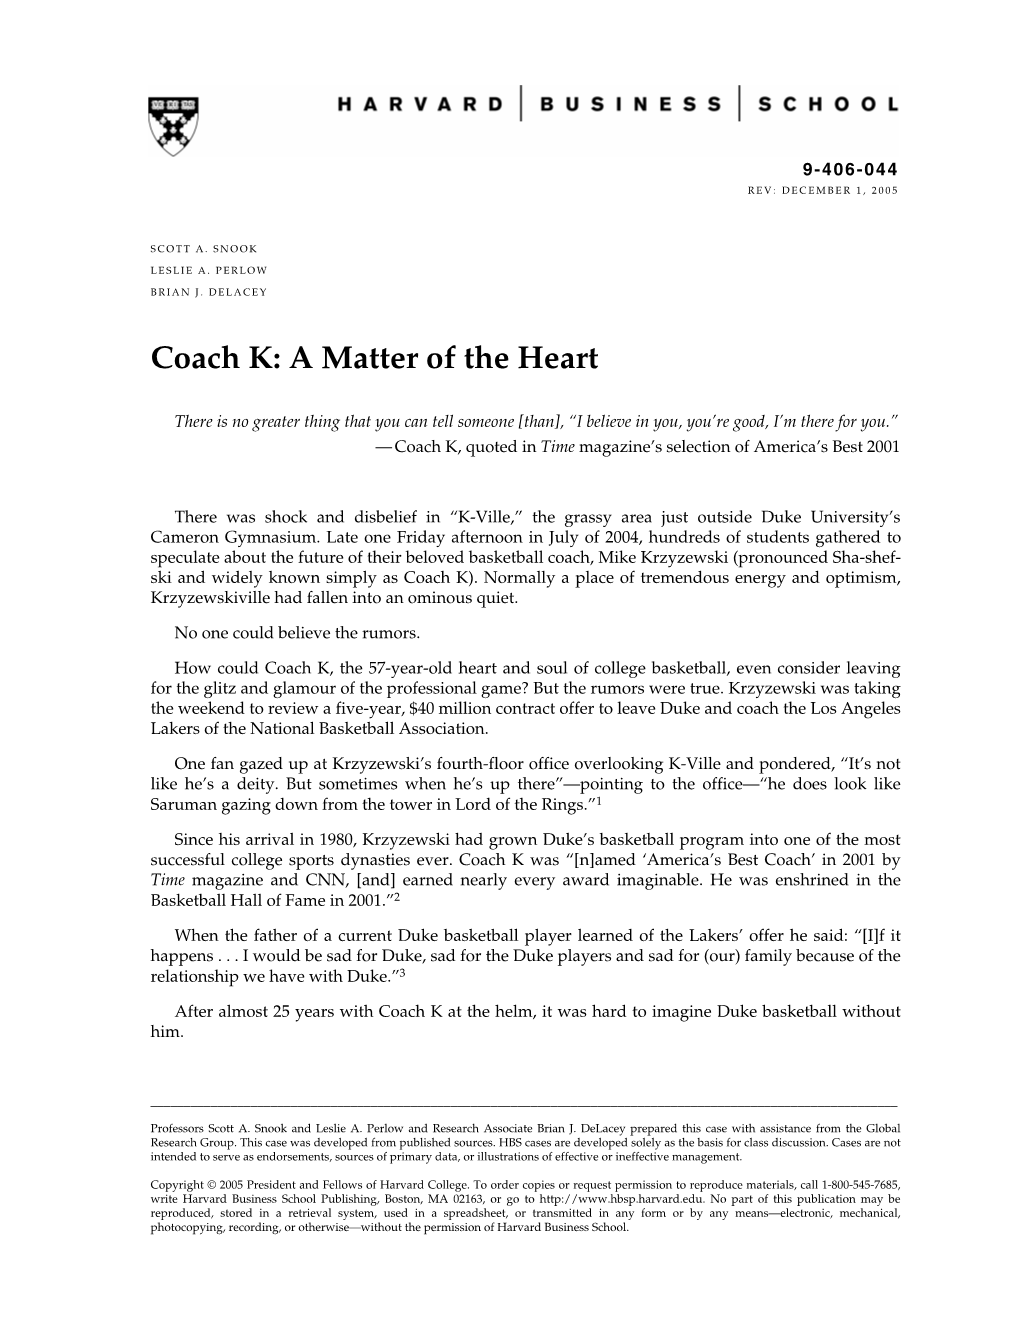 Coach K: a Matter of the Heart